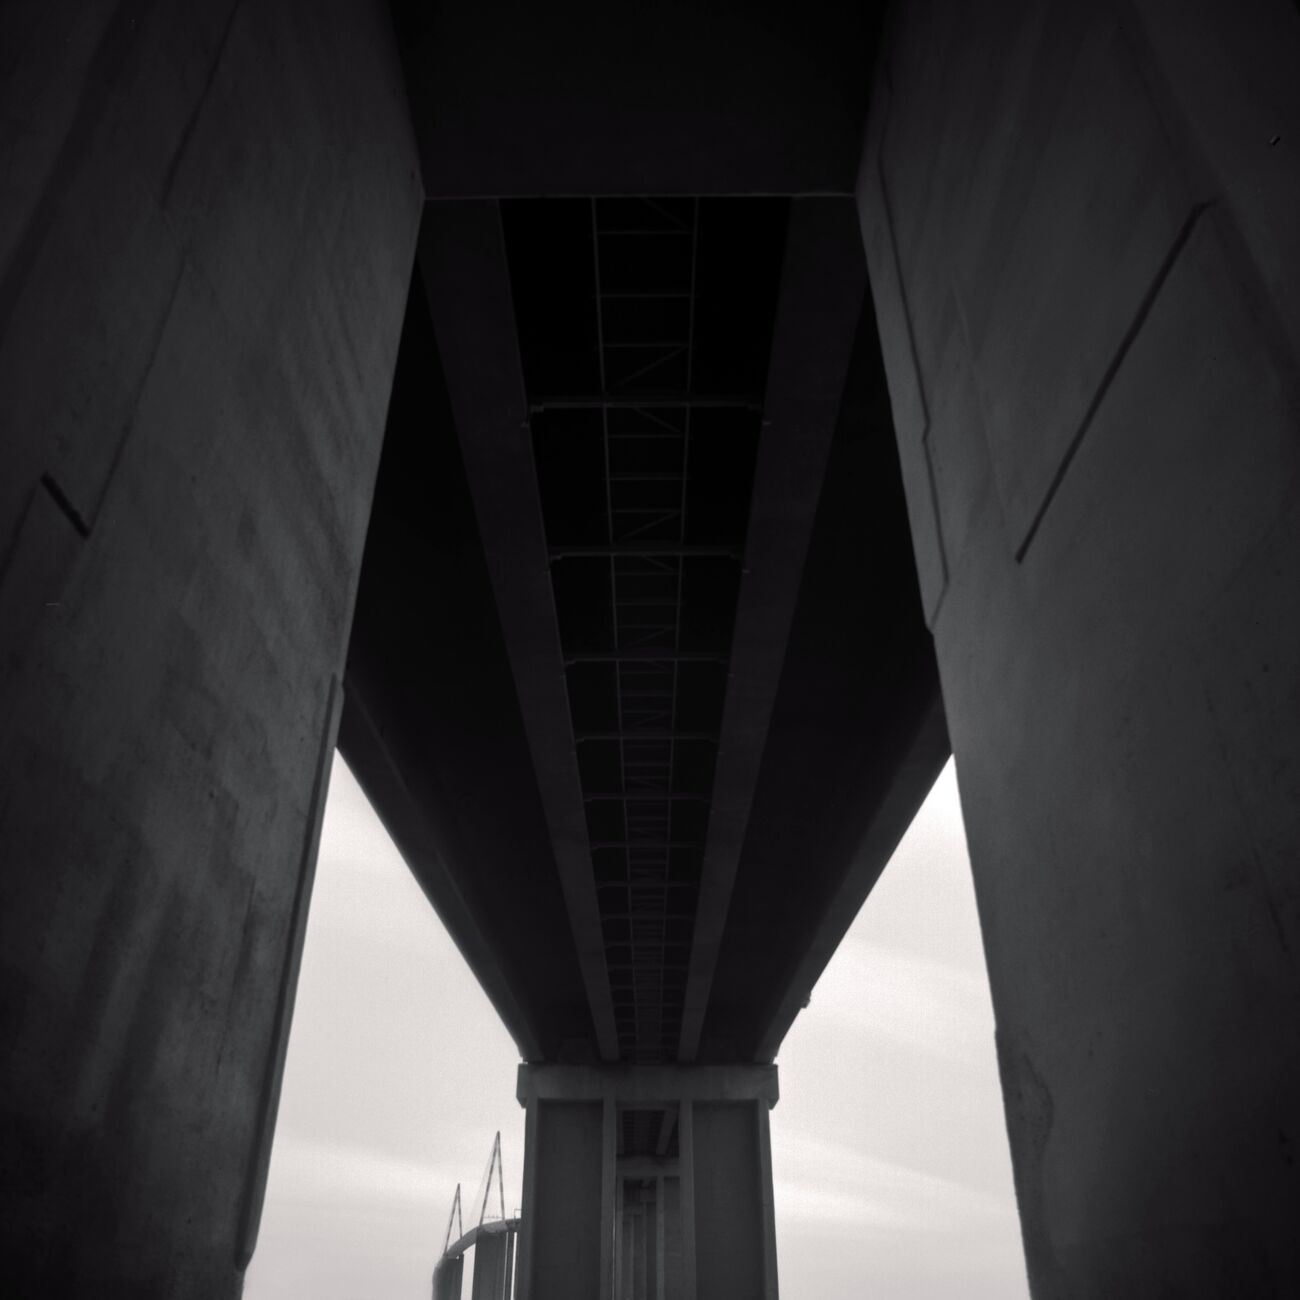 Acheter une photographie 70 x 70 cm, Saint-Nazaire Bridge, etude 2. Ref-11455-15 - Denis Olivier Photographie d'Art